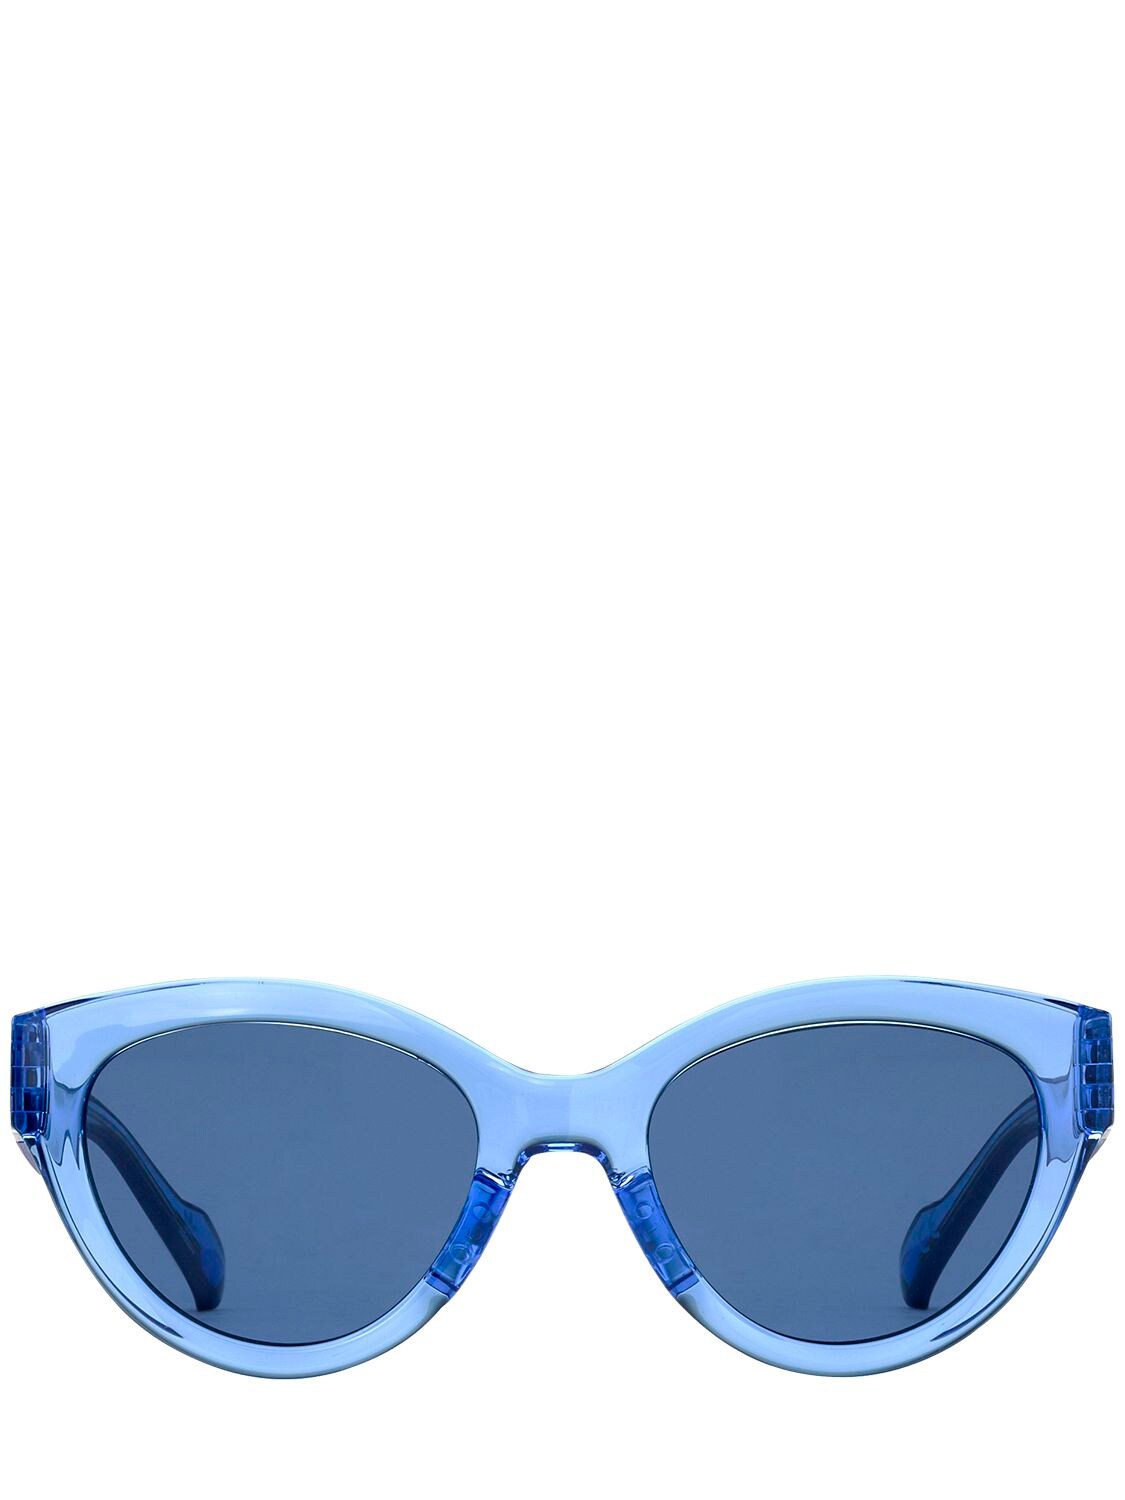 Adidas Originals By Italia Independent Acetate Cat-eye Sunglasses In Blue